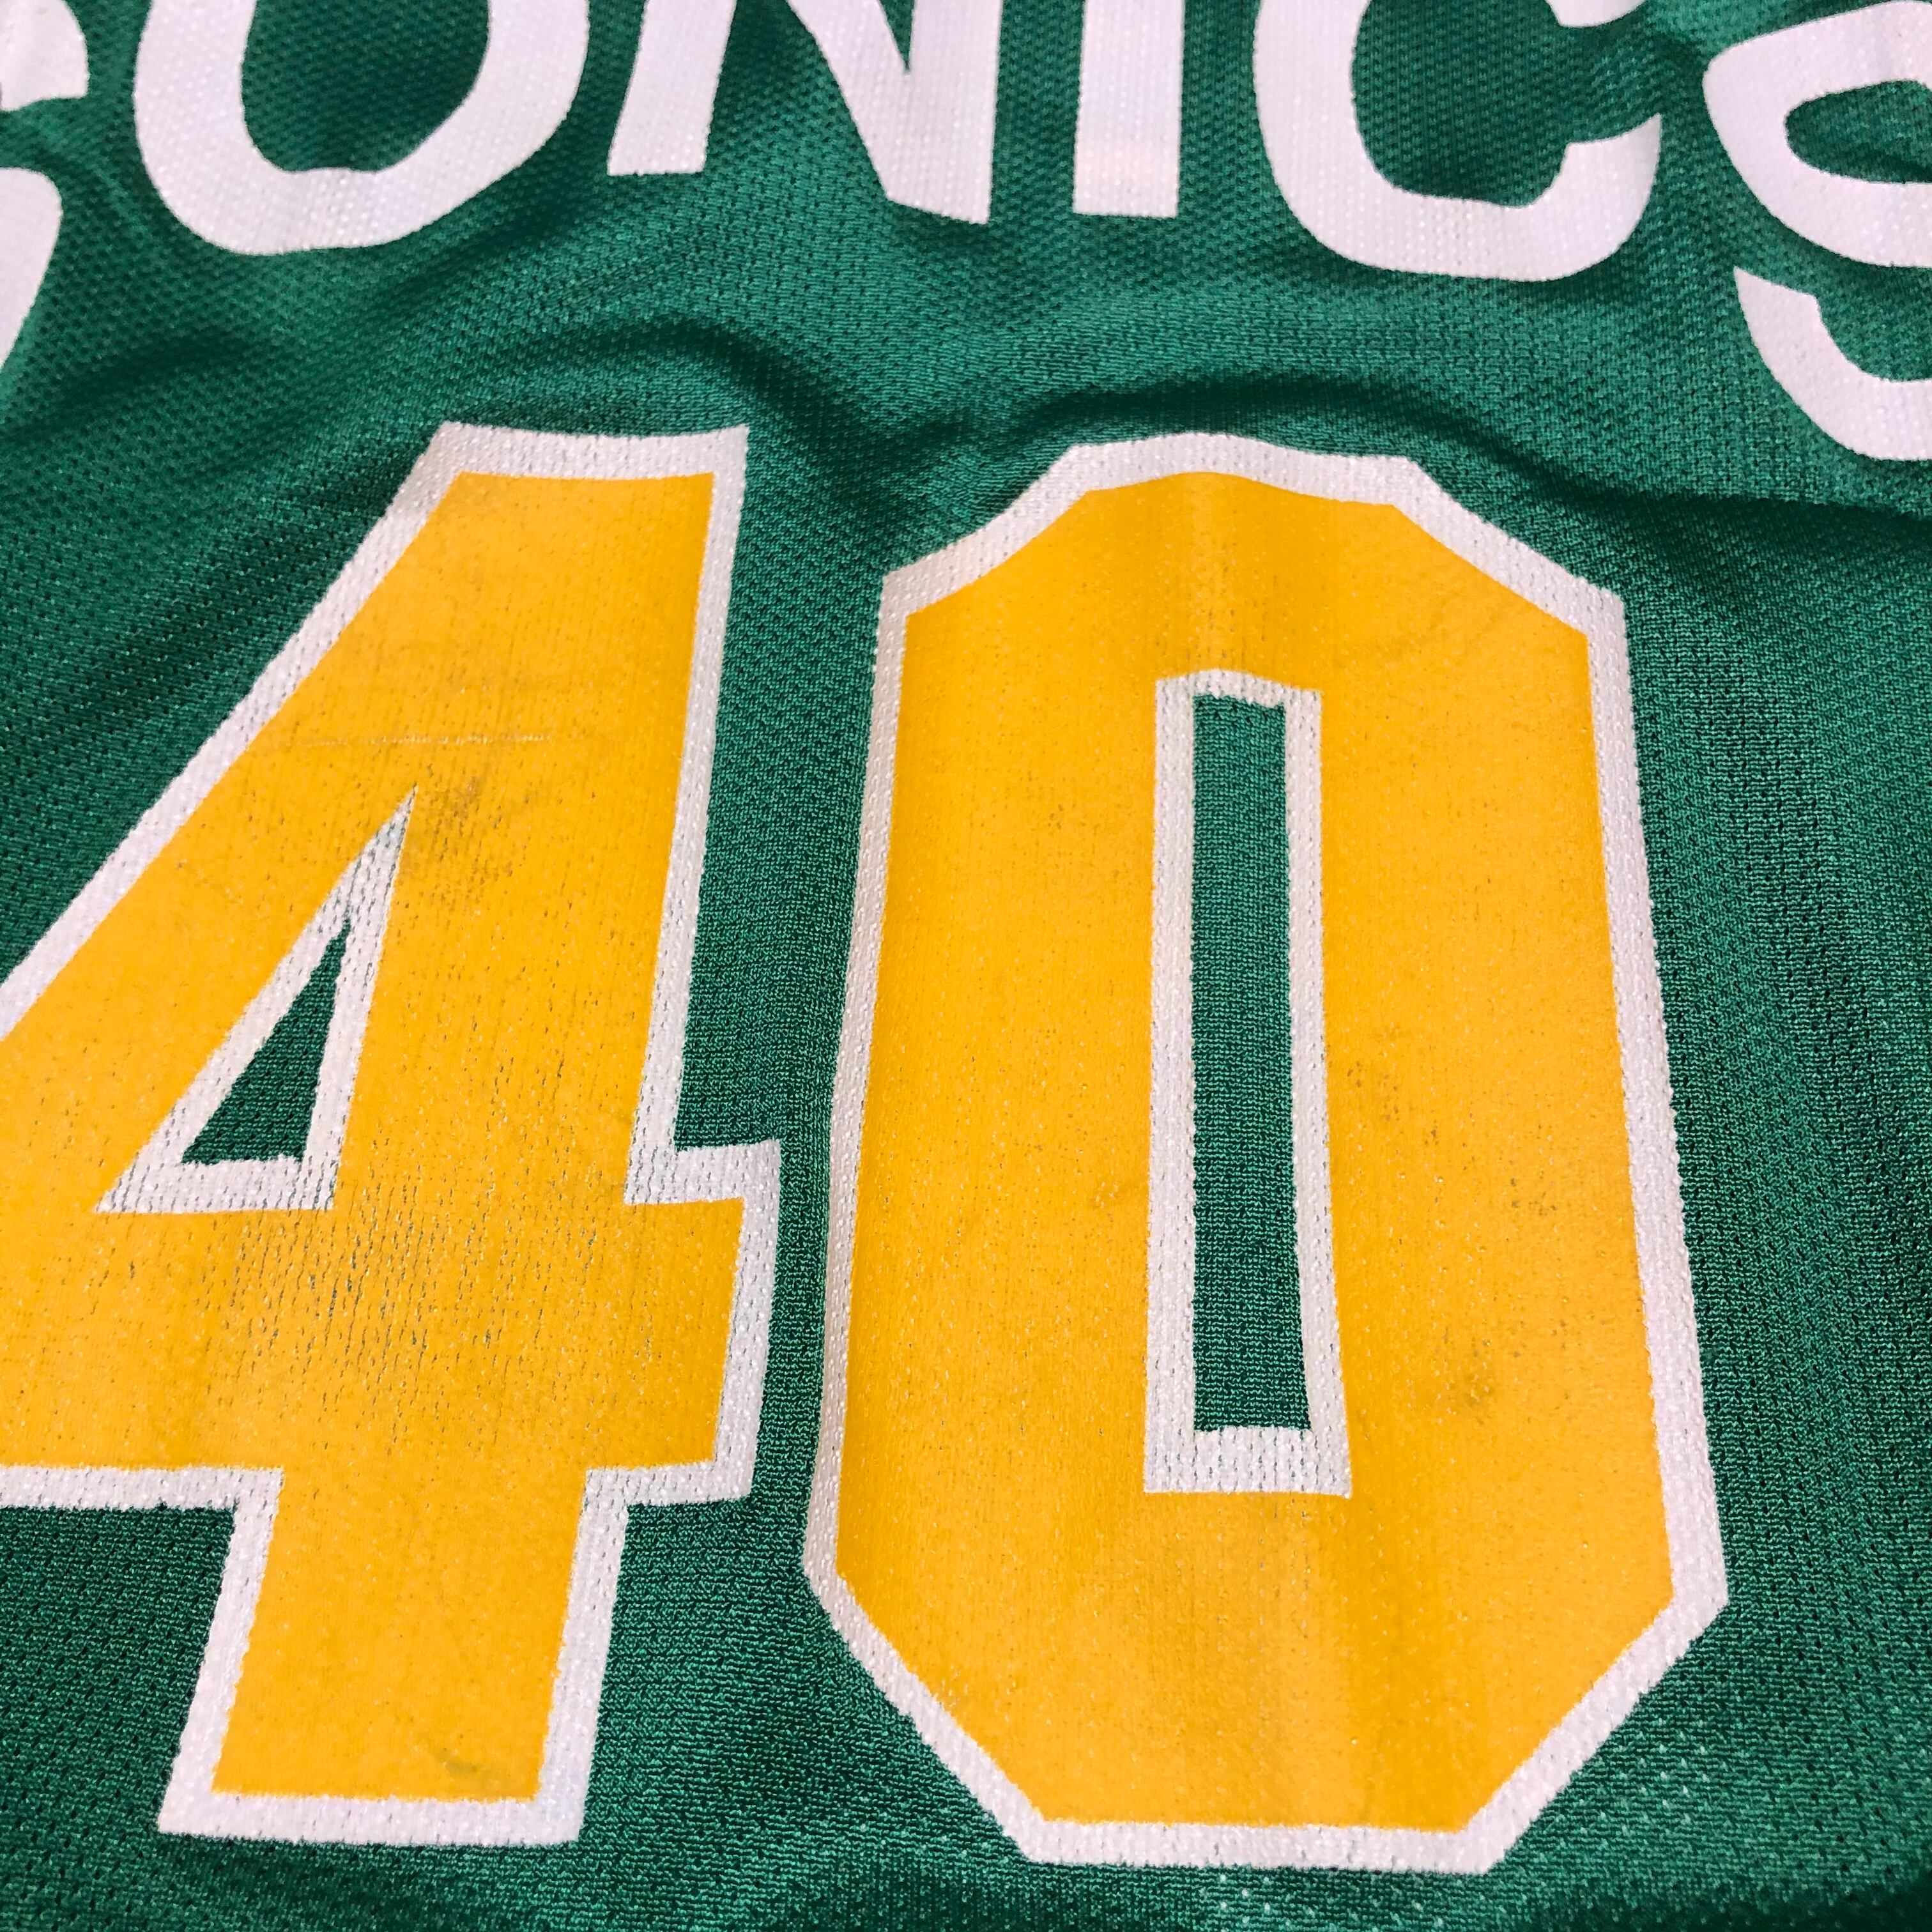 チャンピオン製 NBA SONICS 40ショーンケンプ ユニホーム